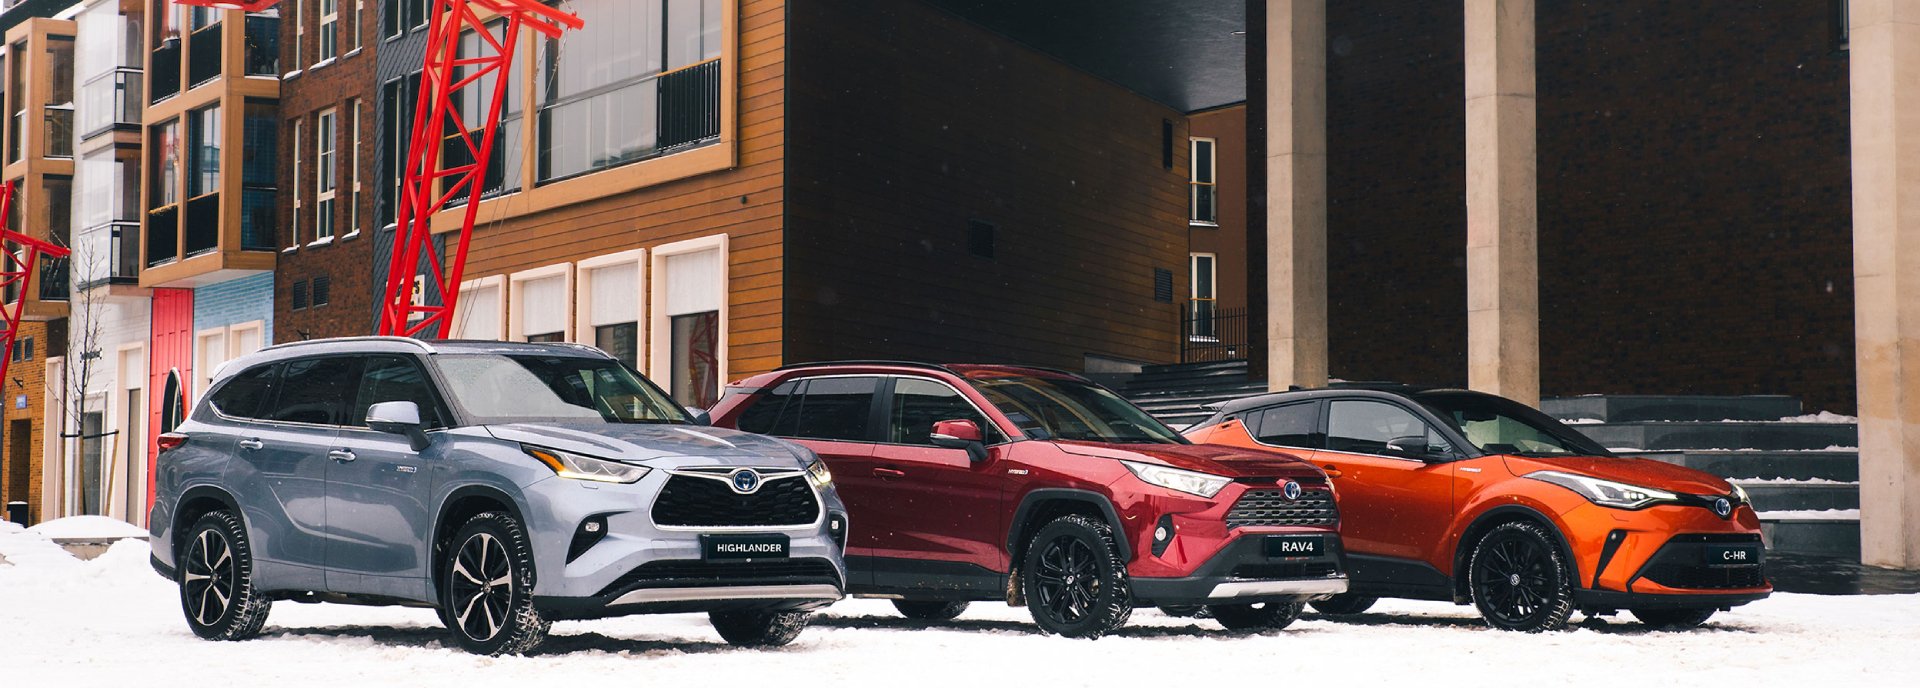 Kas antras Baltijos šalyse parduotas „Toyota“ automobilis – hibridinis